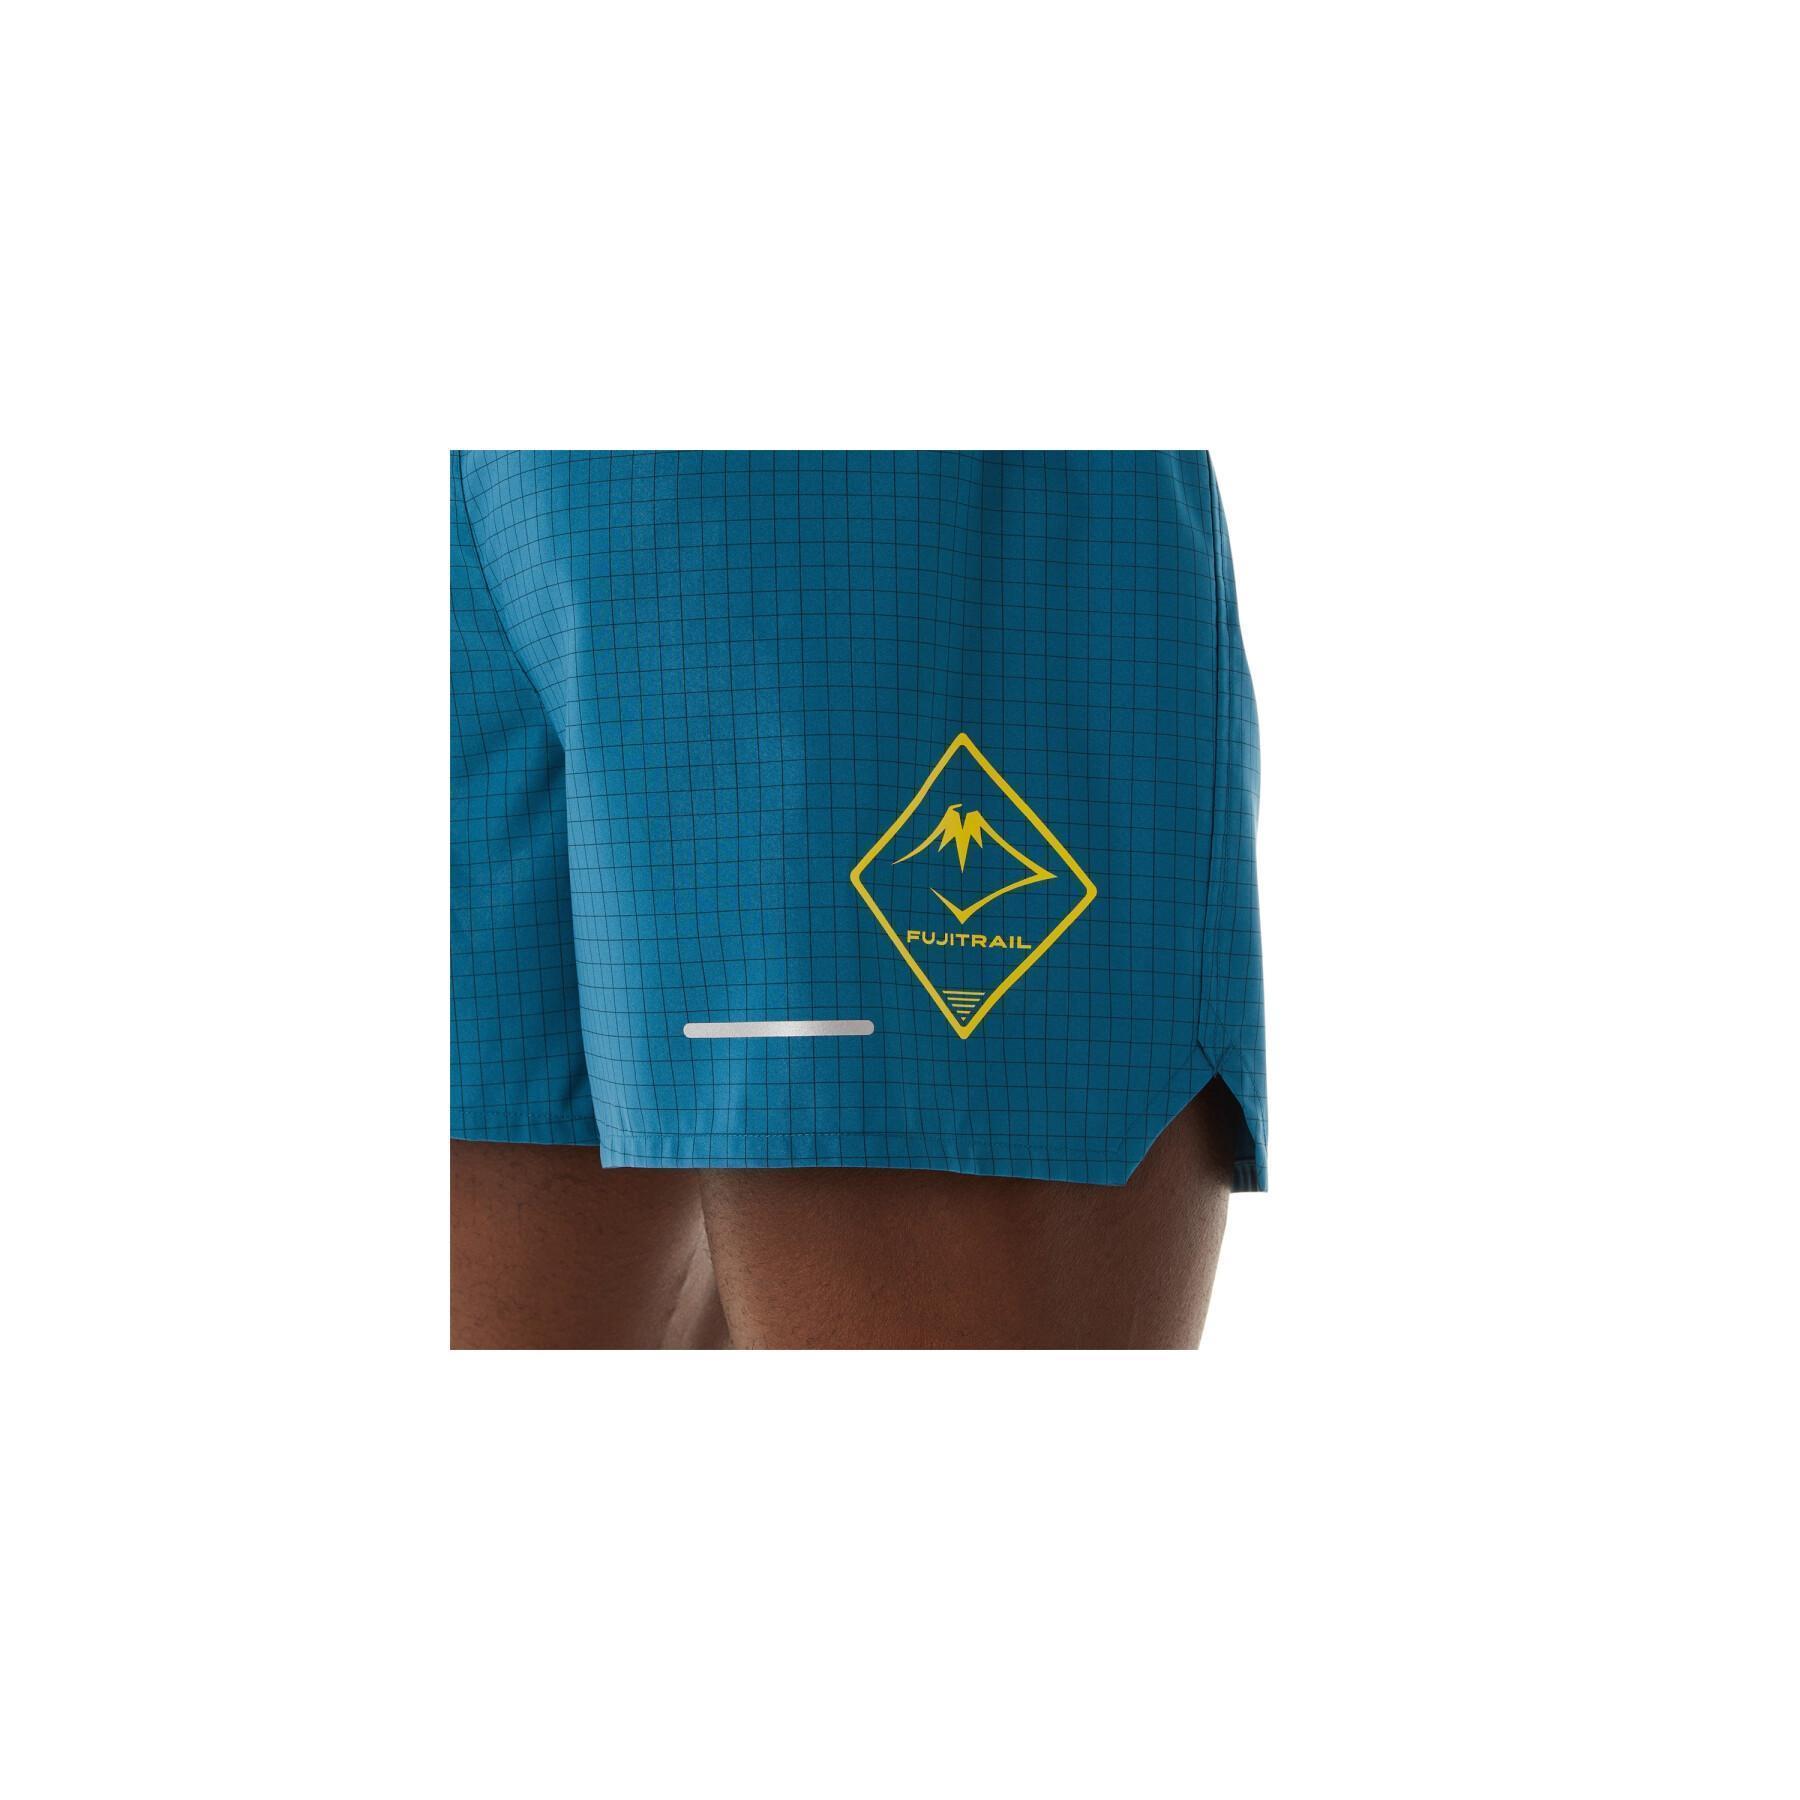 Pantaloncini Asics Fujitrail Logo